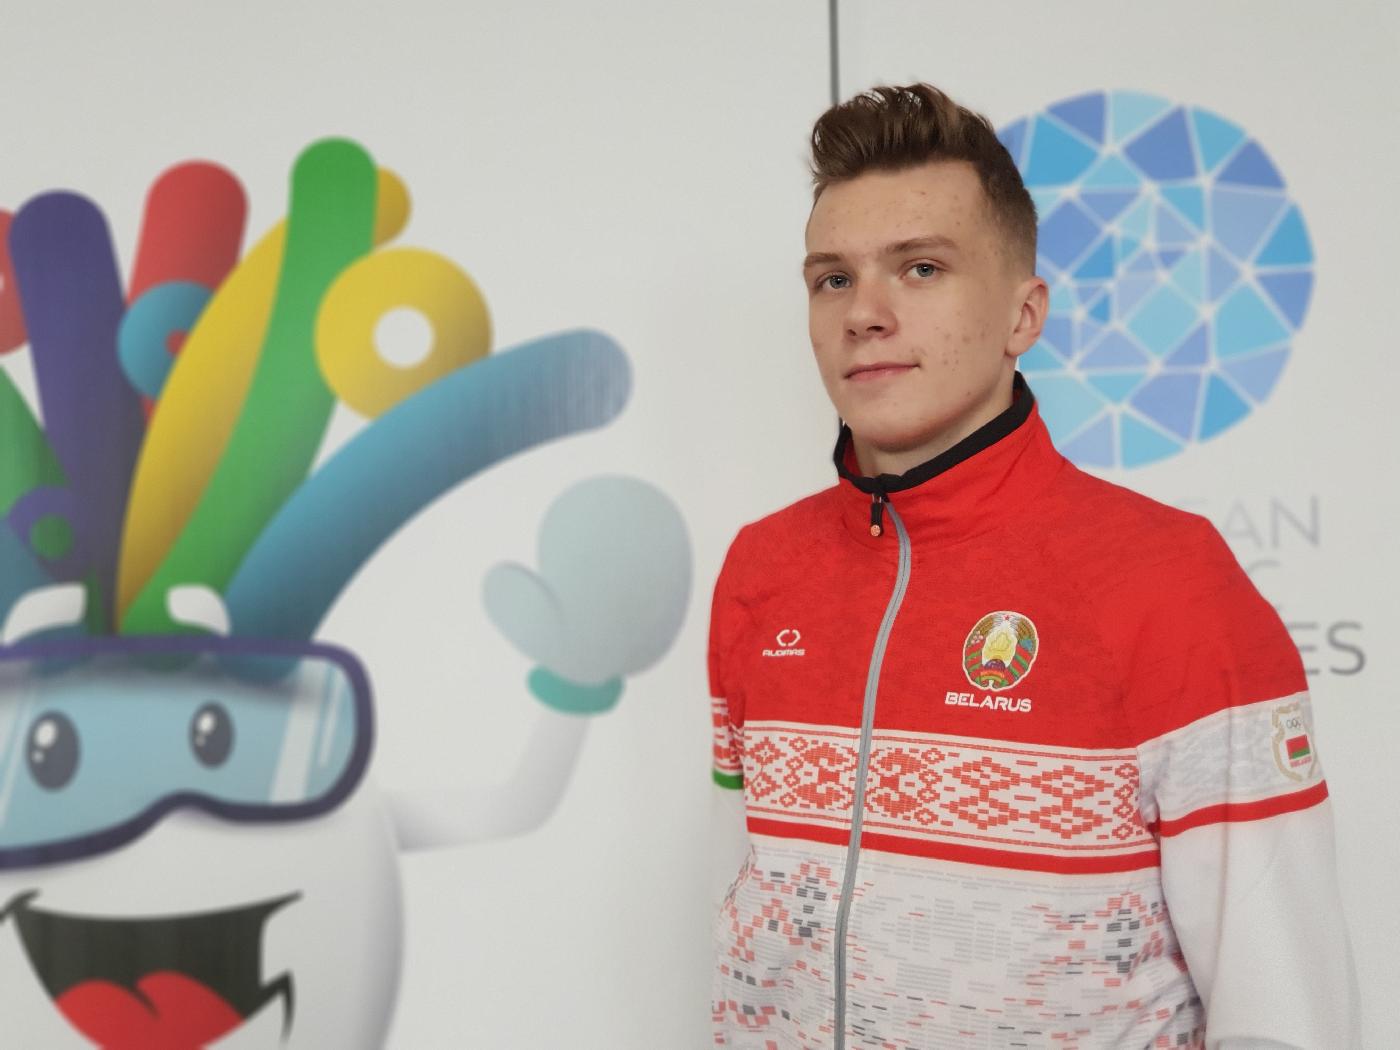 Кирилл Буйнич – капитан и флагоносец на церемонии открытия ЕЮОФ-2019